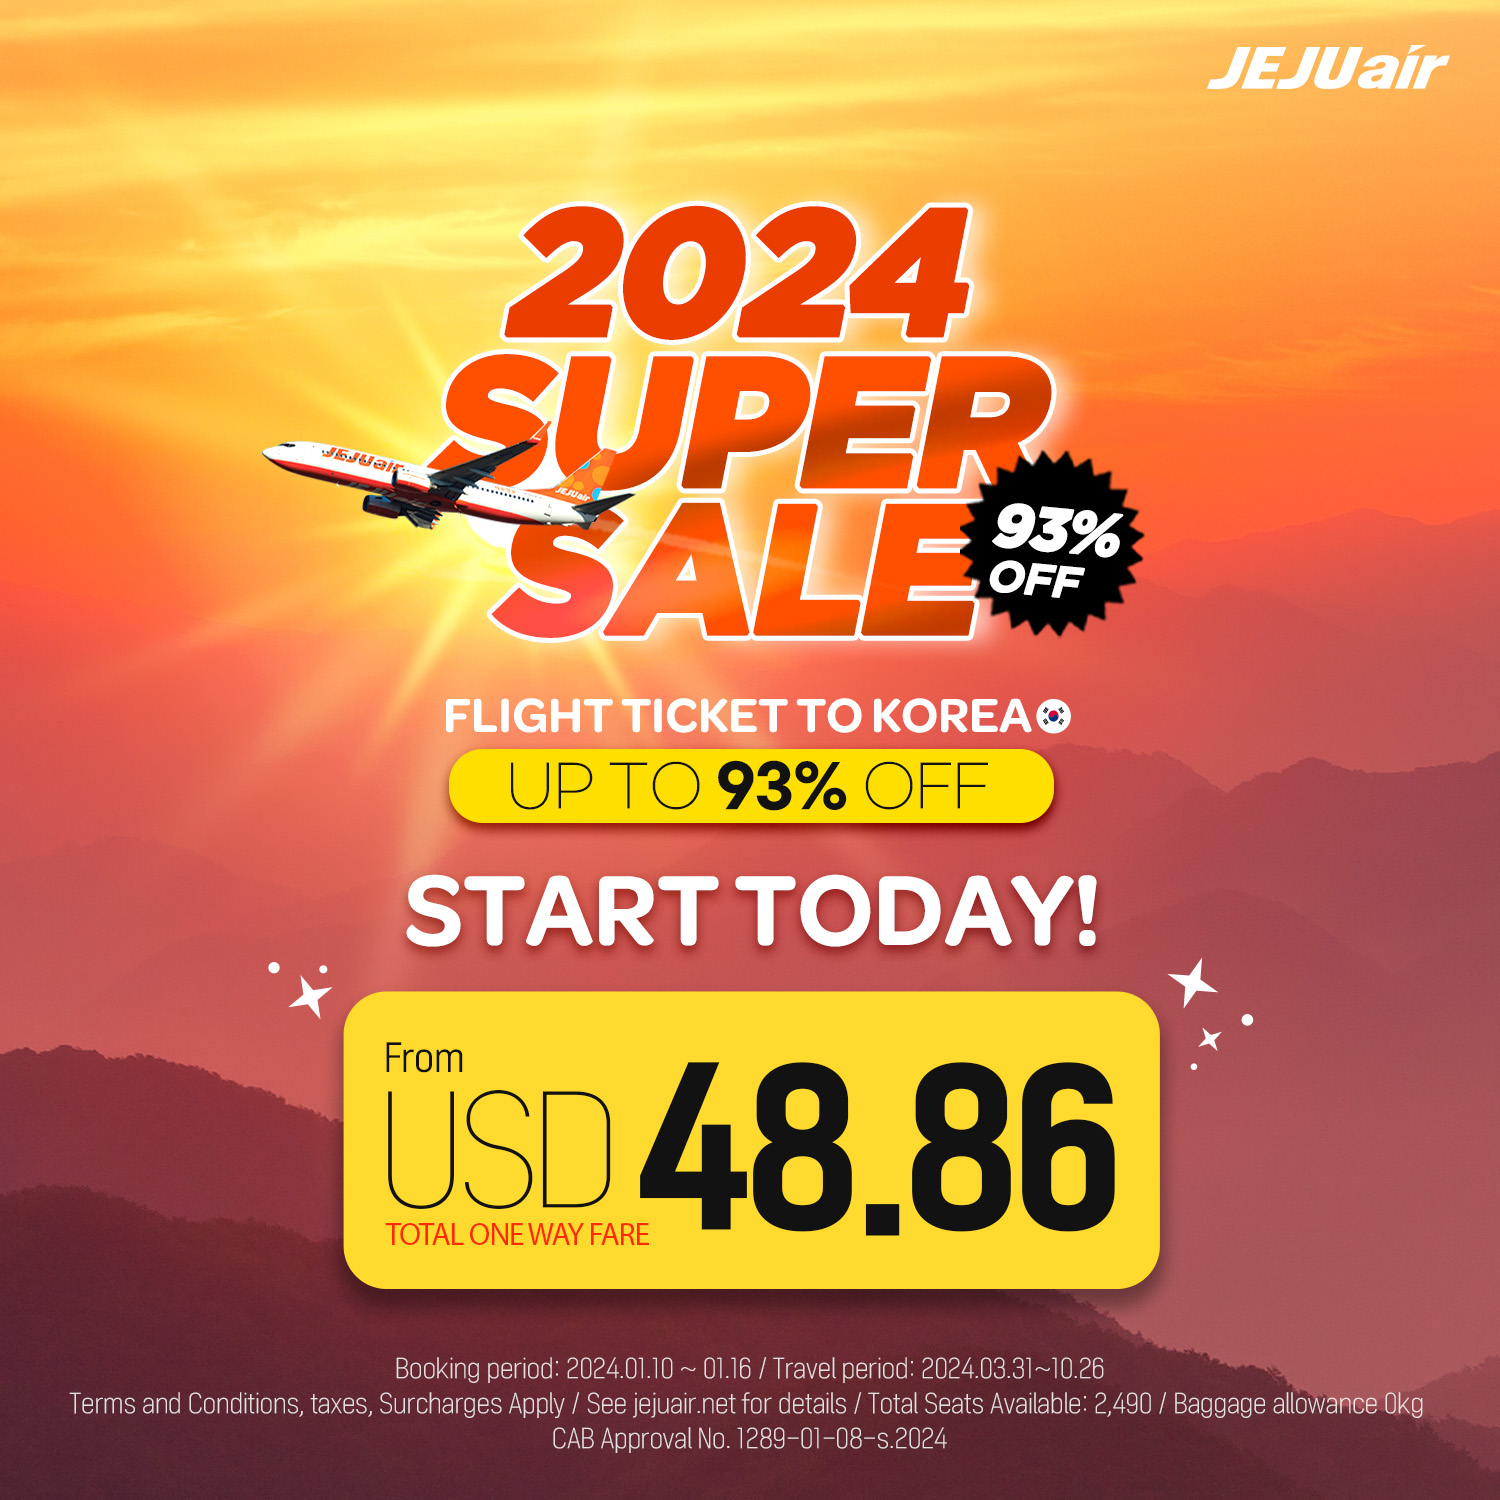 Jeju Air Super Sale 2024